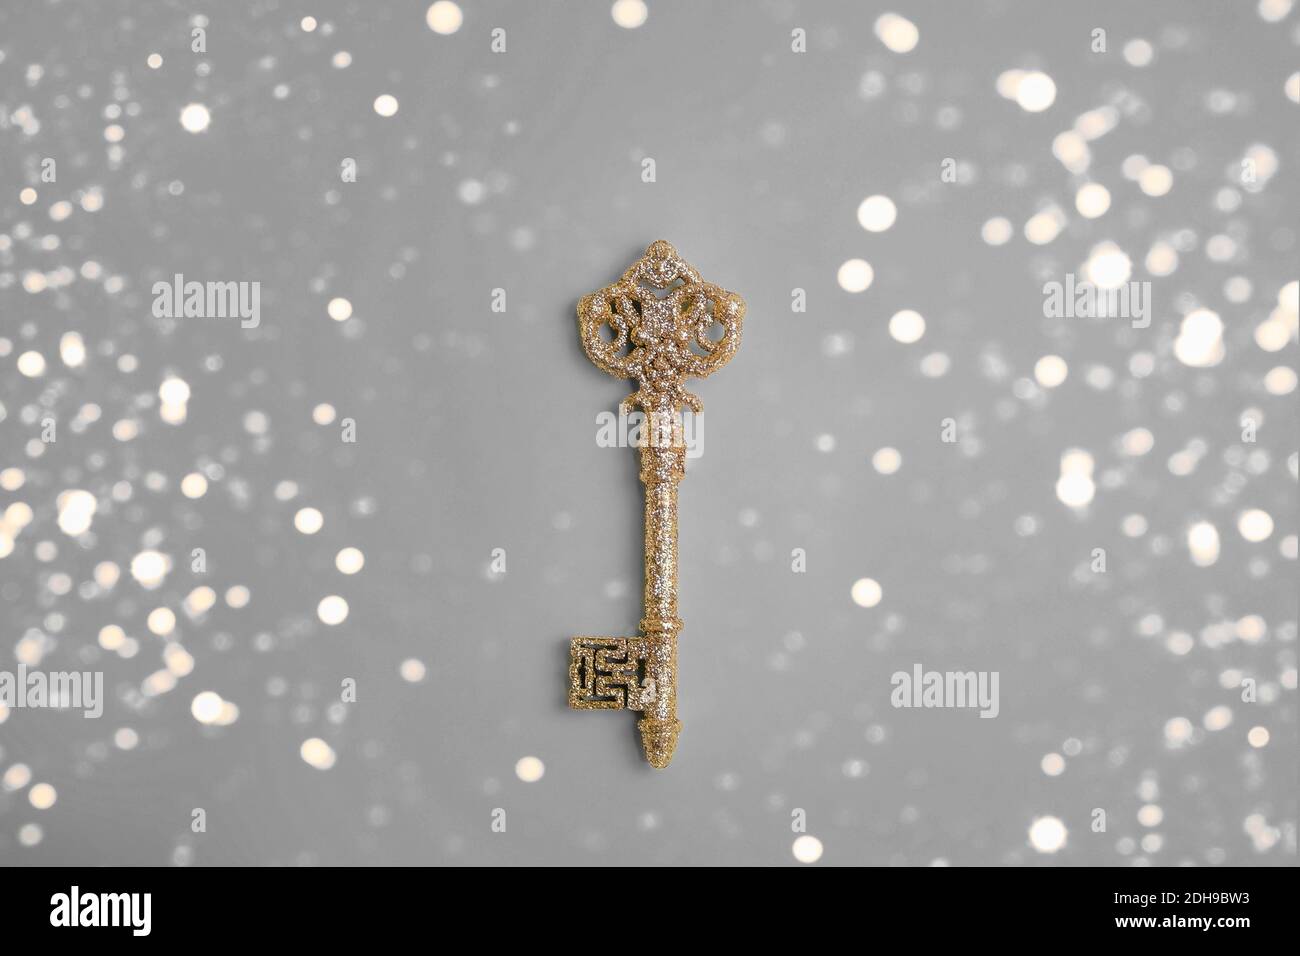 Una chiave dorata retrò scheletro su sfondo grigio, chiave per il successo Foto Stock